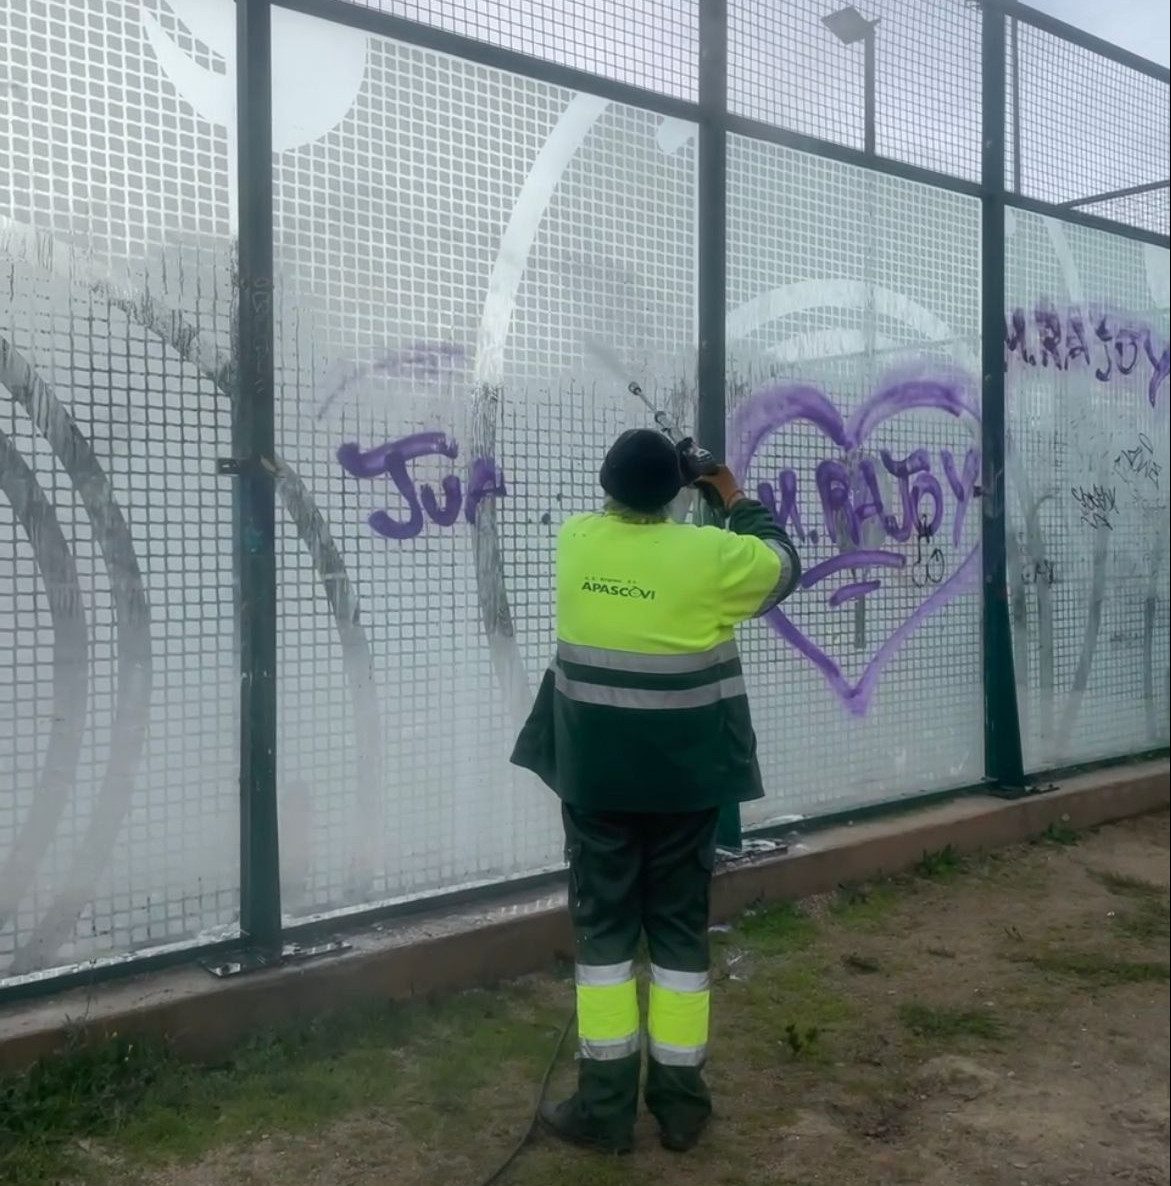 El contrato de limpieza de grafitis ha sido adjudicado a APASCOVI